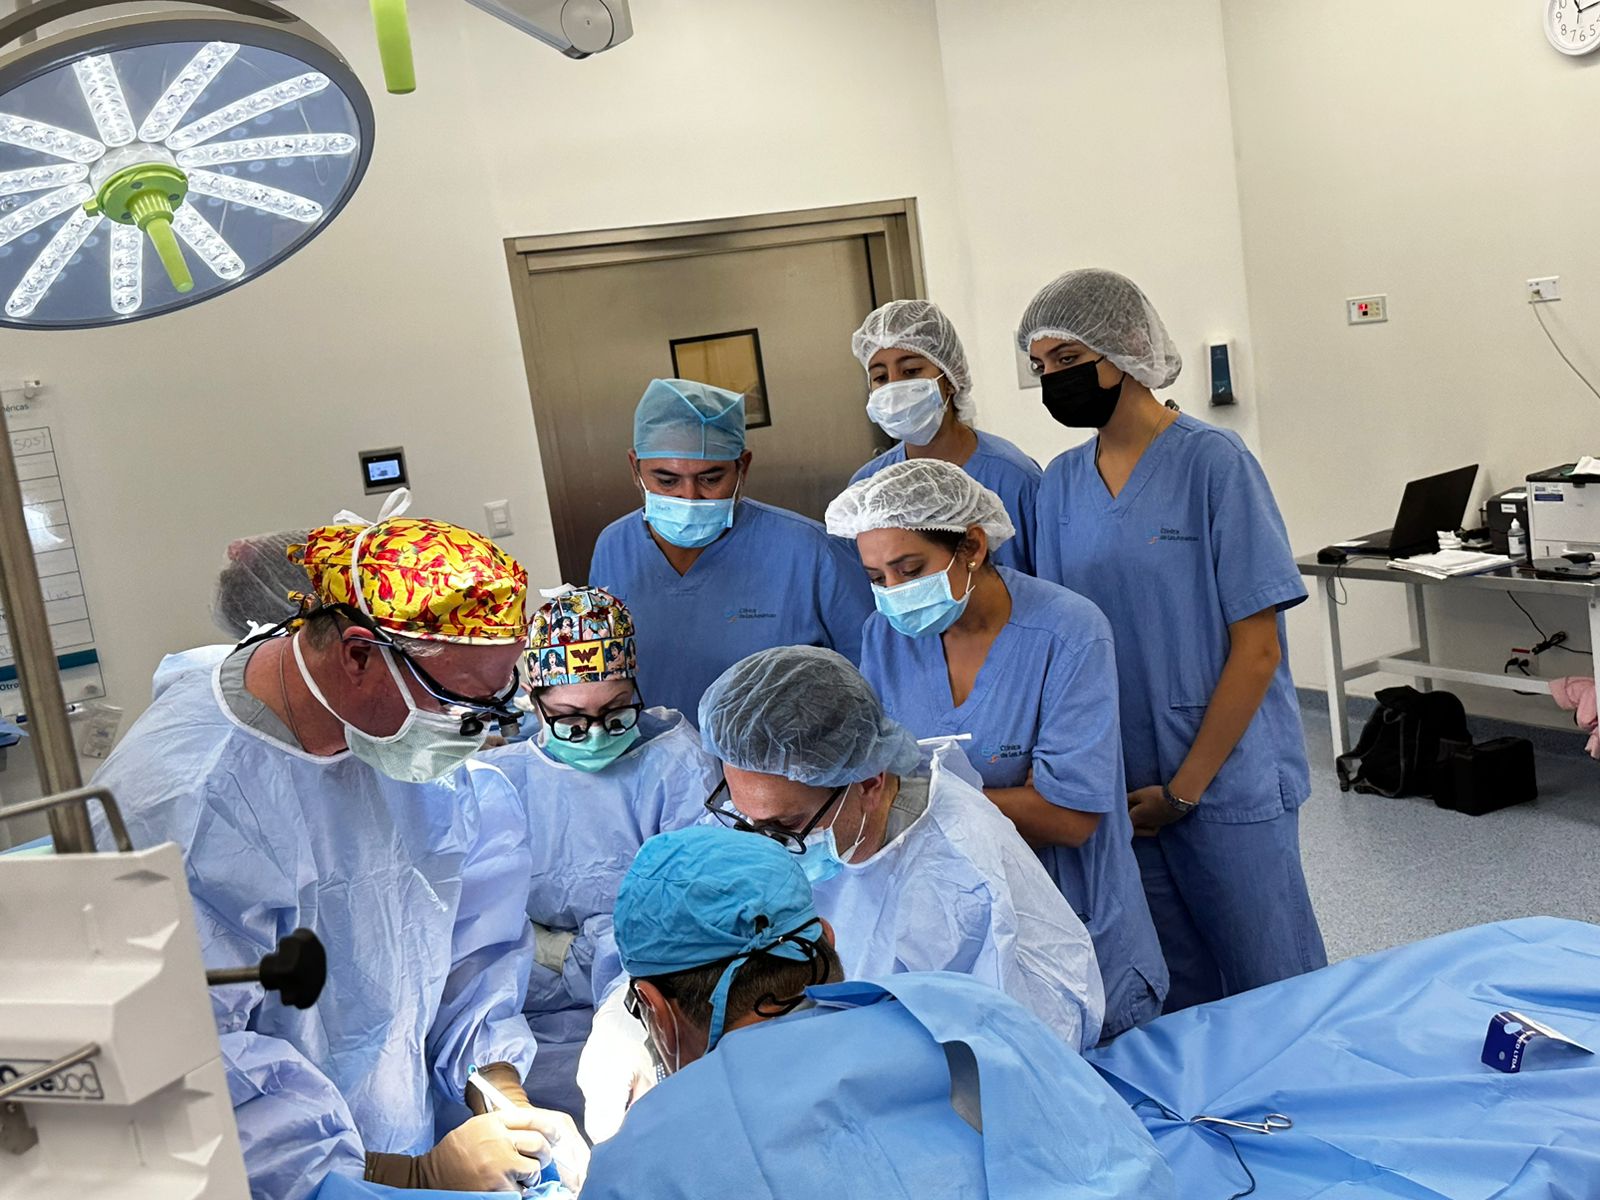 Cirugías de Mano Gratuitas en Santa Cruz: La Fundación Mercantil Santa Cruz “Puedes Creer” Hace Realidad los Sueños